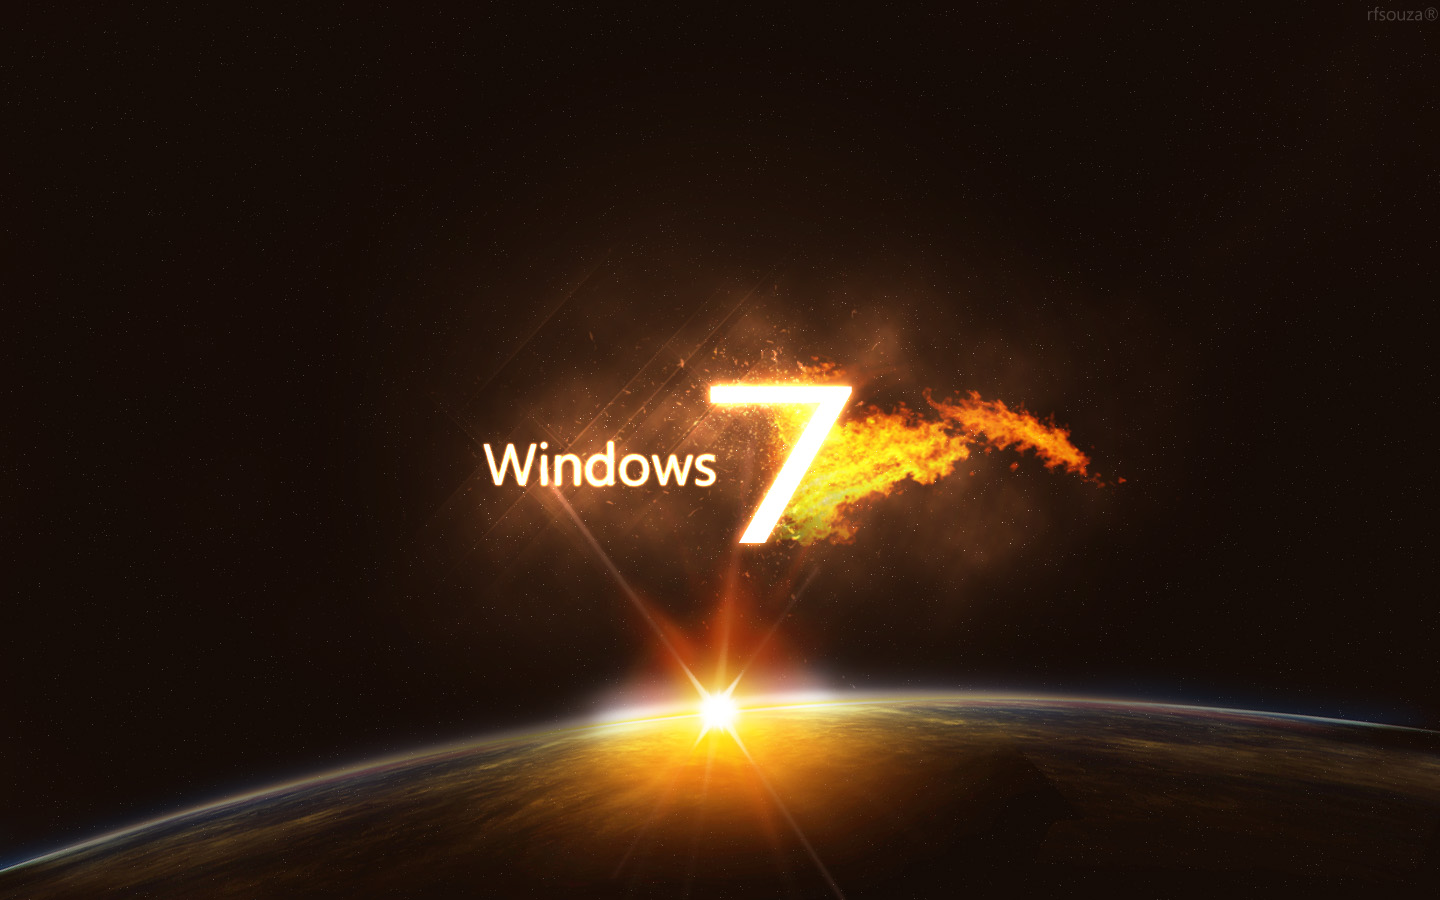 http://3.bp.blogspot.com/-ABcj-ZVcBEI/TkJ4okXeTAI/AAAAAAAABwY/gfKrIb5eEnQ/s1600/windows_7_ultimate-wide.jpg